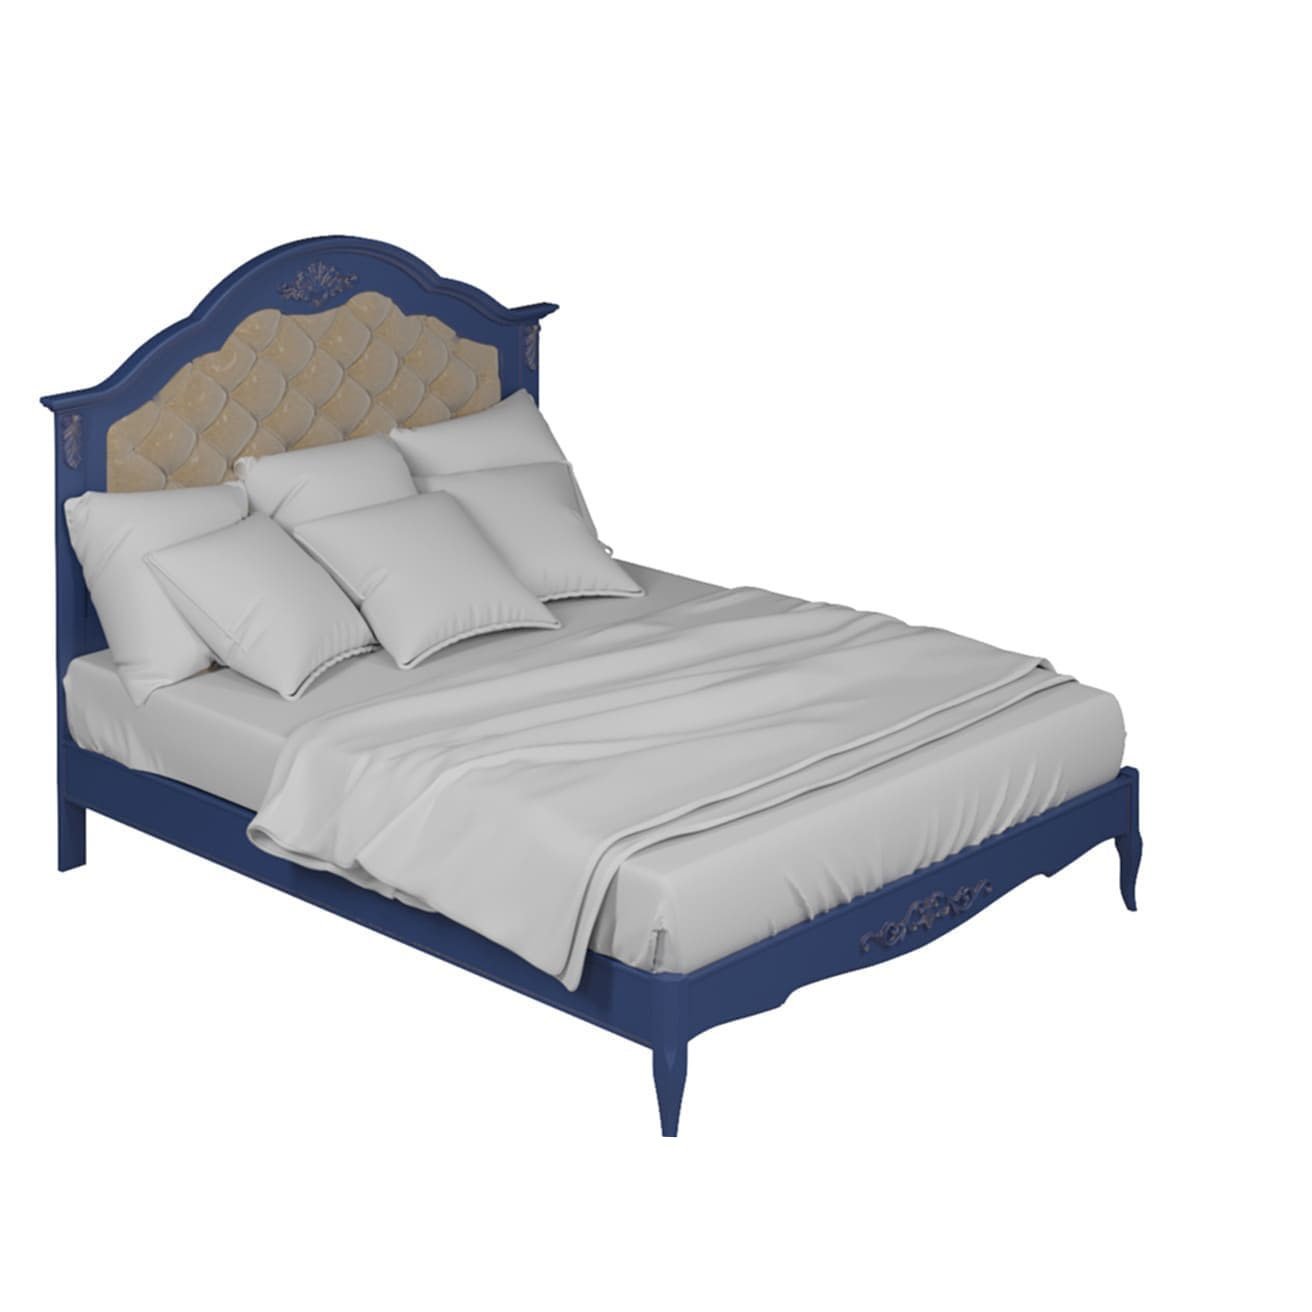 Кровать Aletan Provence, двуспальная, 180x200 см, цвет: синий (B218IN)B218IN